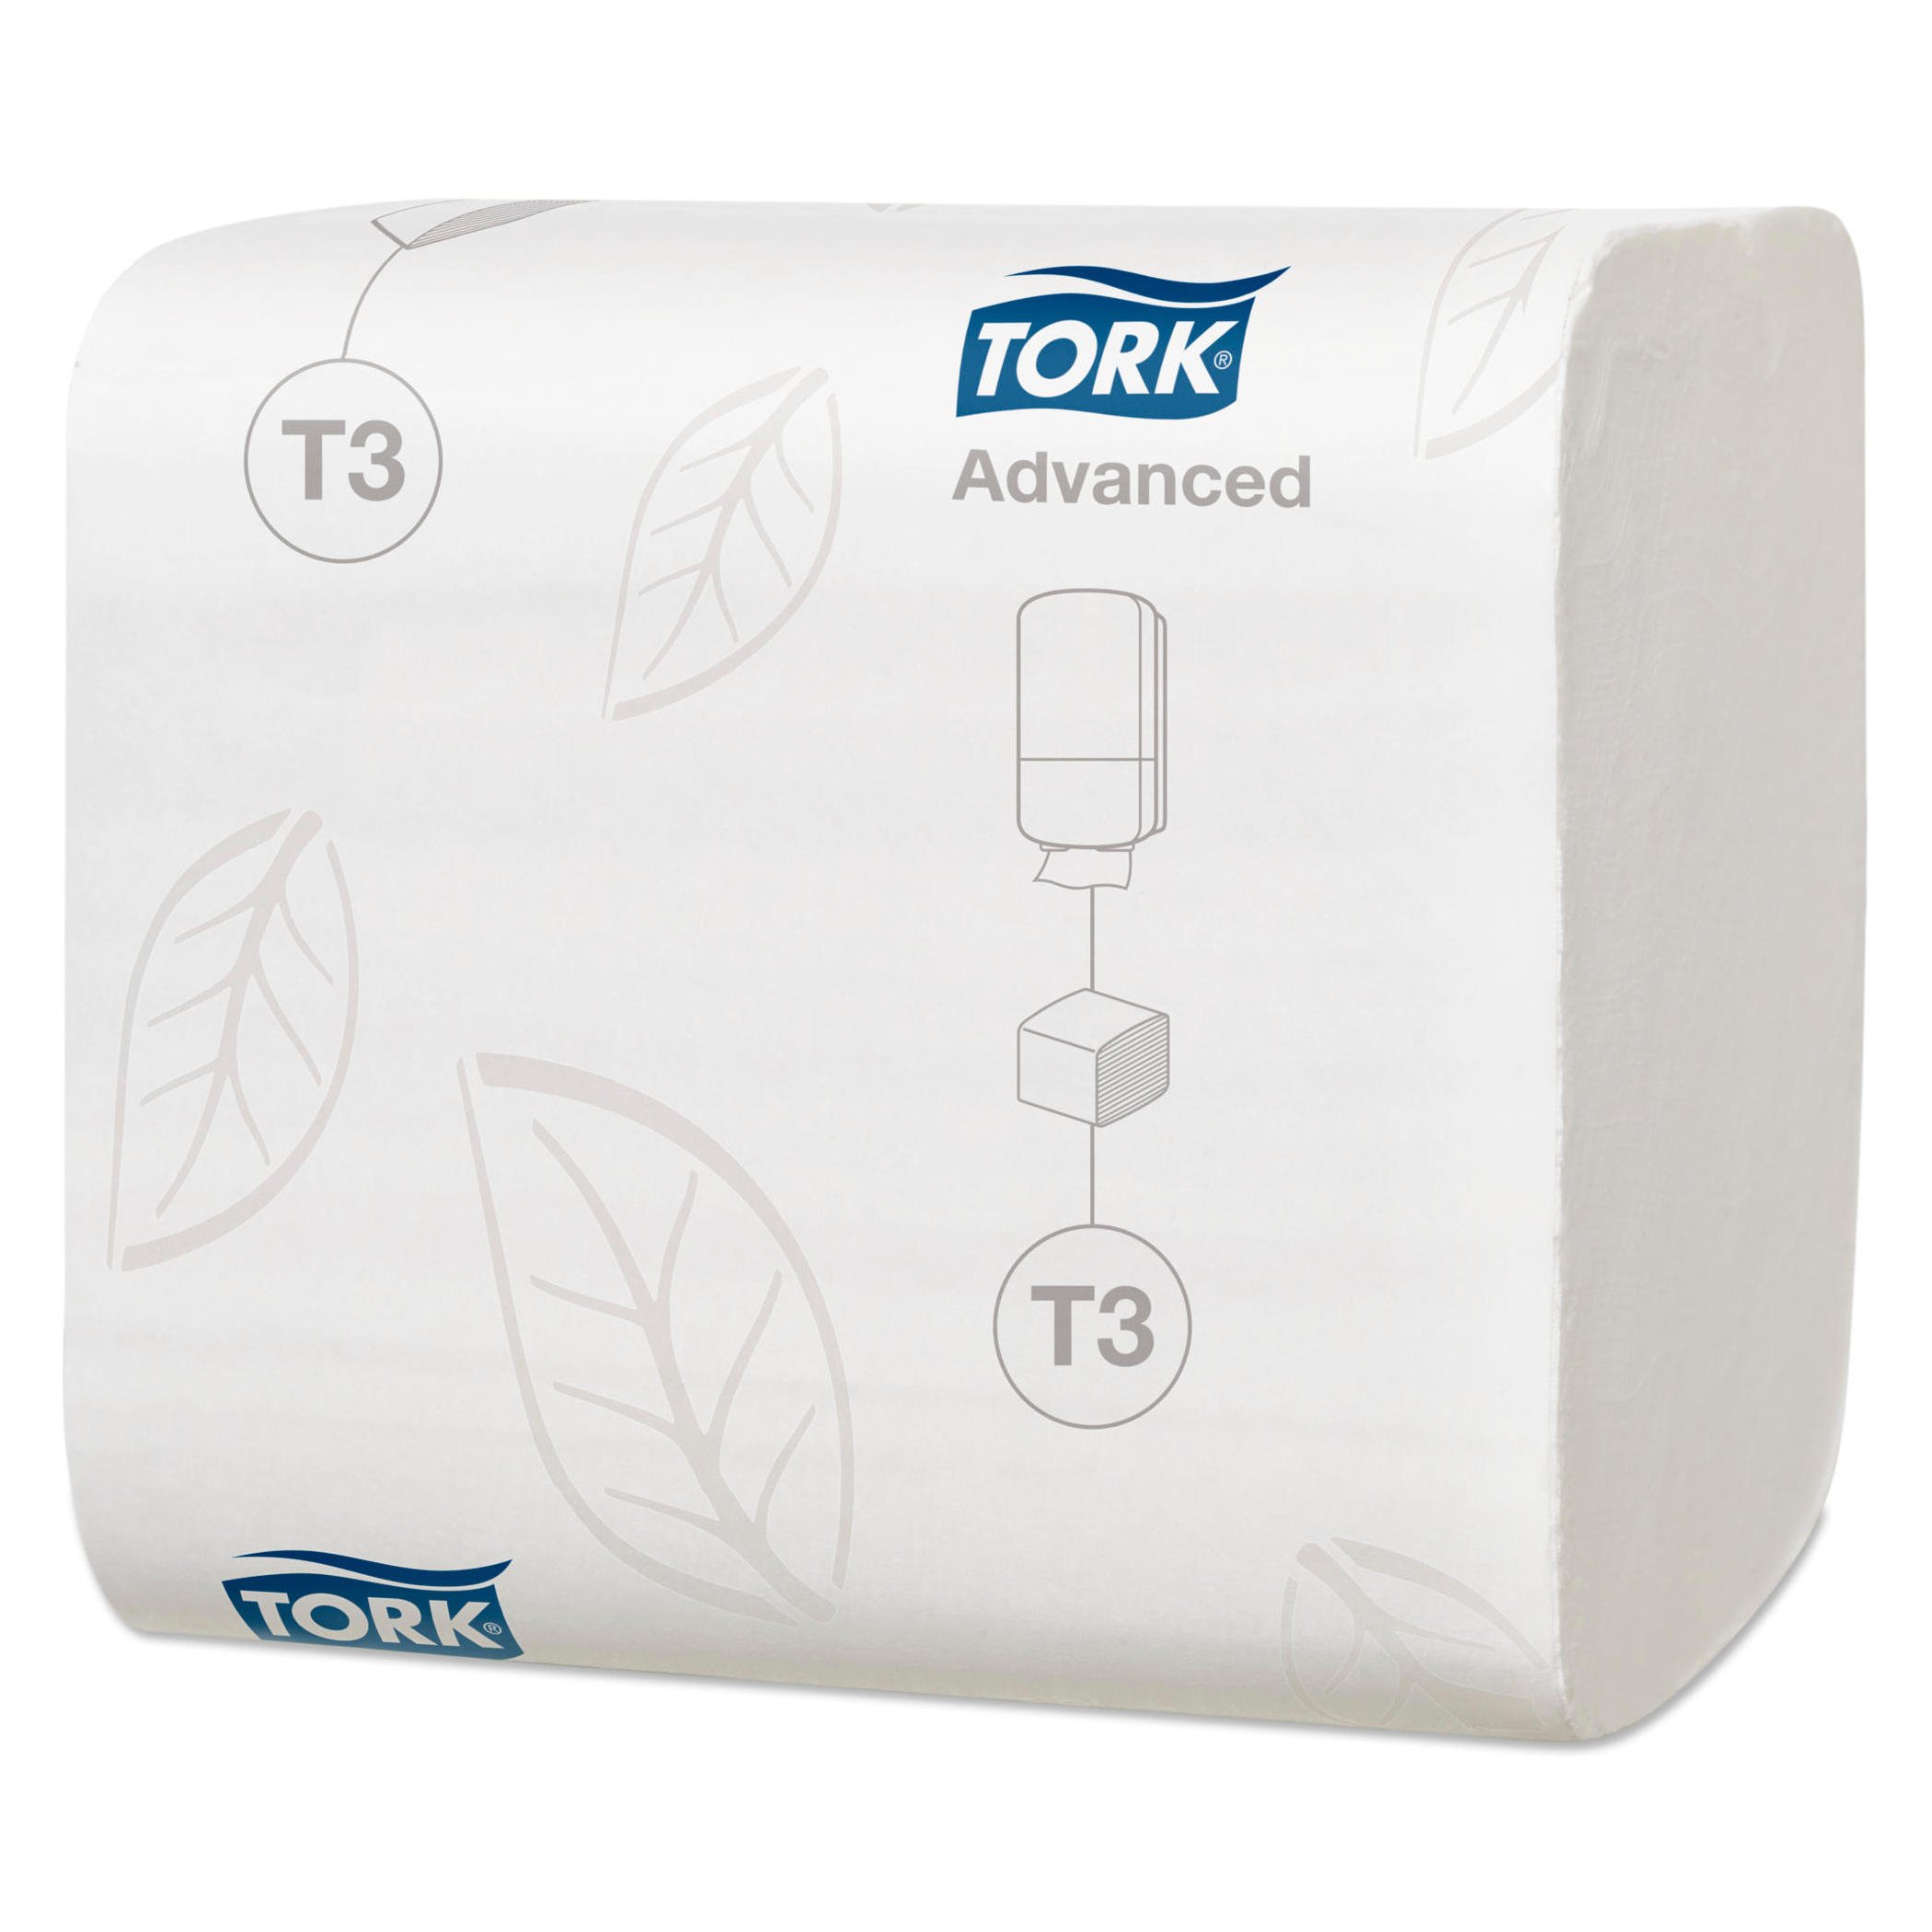 Tork toiletpapir Advanced T3 i ark 2 lag, 8712 ark